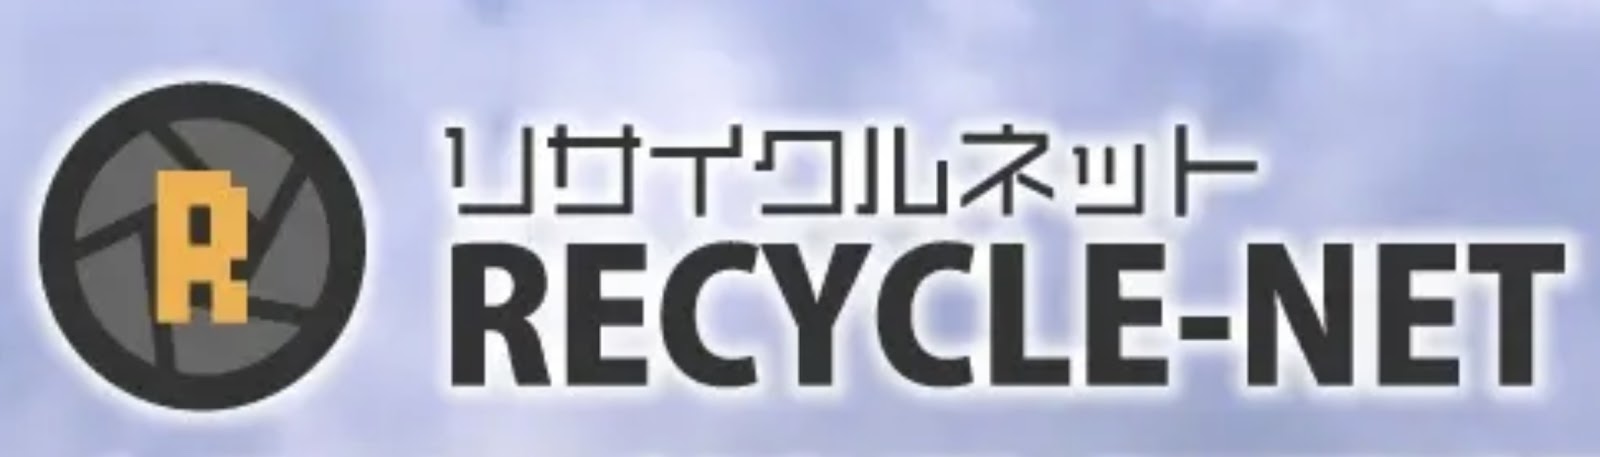 リサイクルネットロゴ